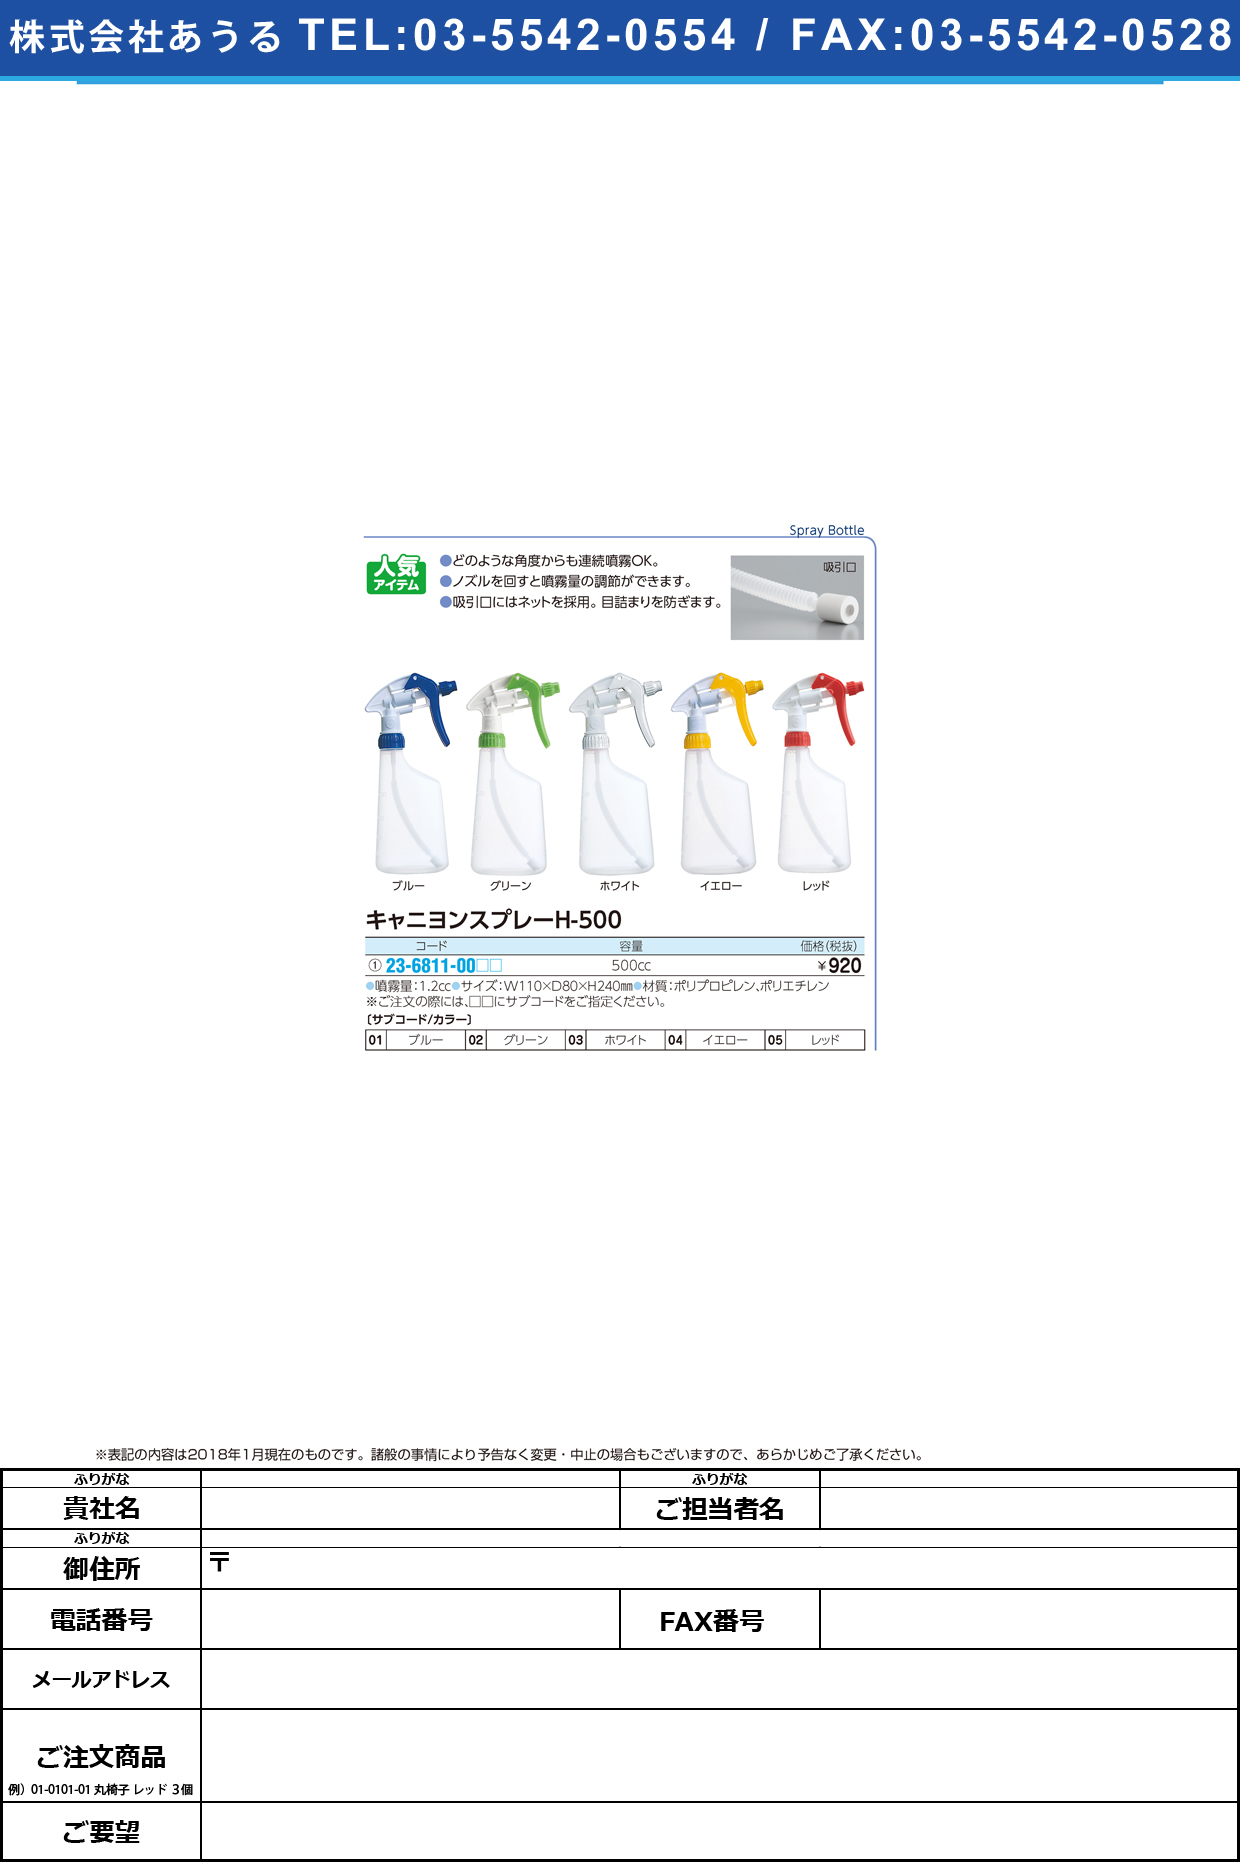 (23-6811-00)キャニヨンスプレー H-500(500CC) ｷｬﾆﾖﾝｽﾌﾟﾚｰ グリーン(山崎産業)【1個単位】【2019年カタログ商品】